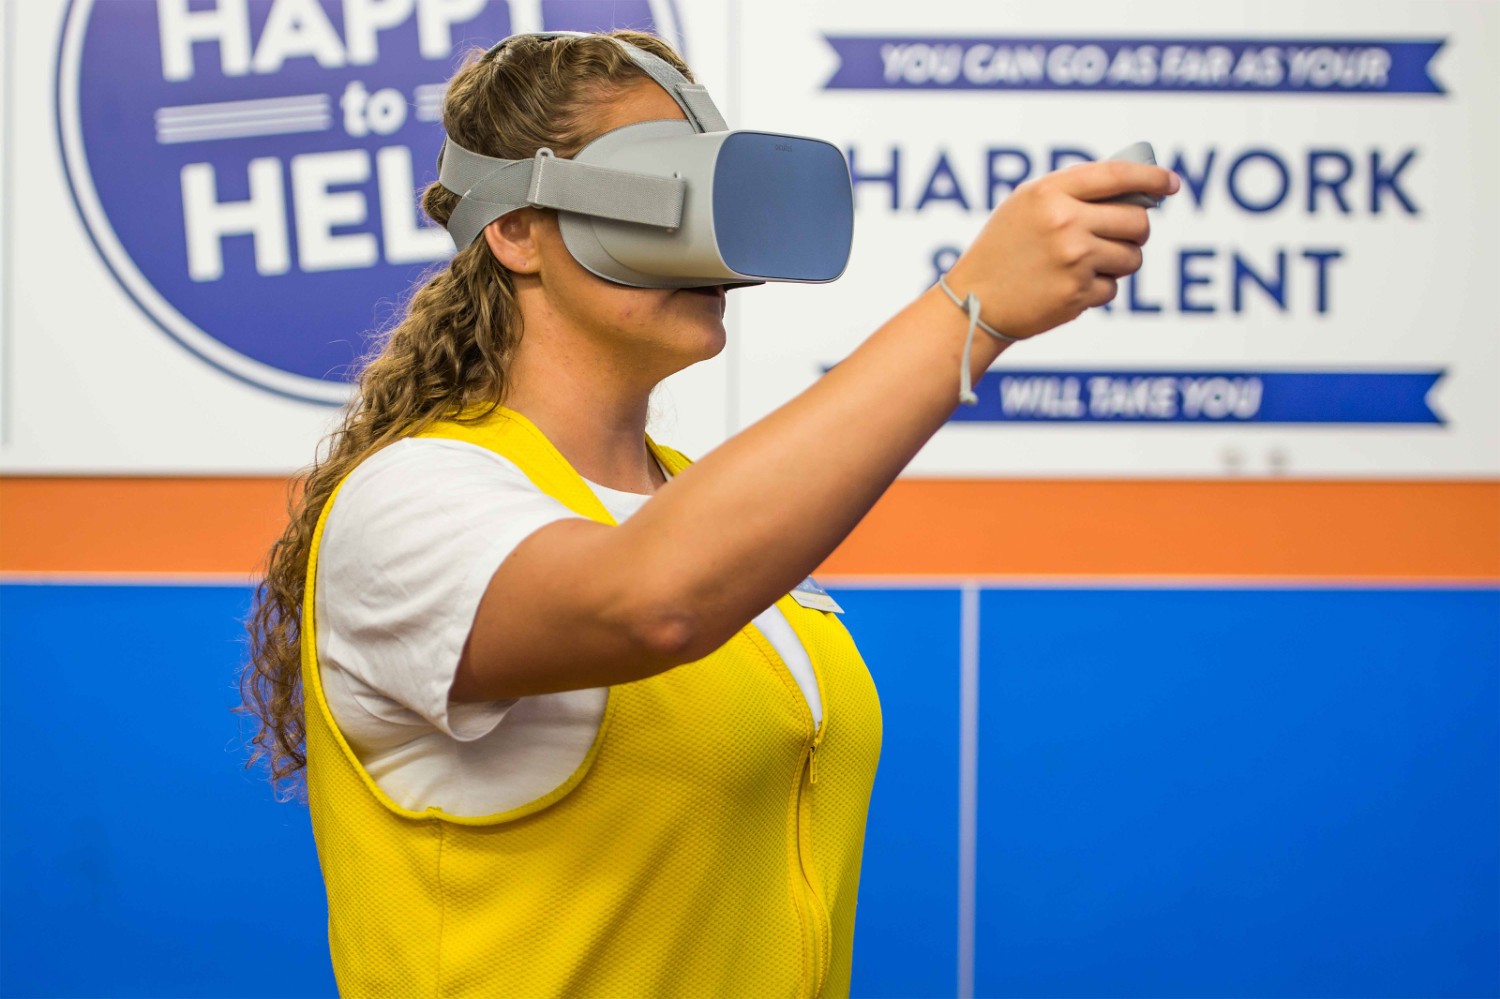 Associate Abigail trains using an Oculus VR Headset